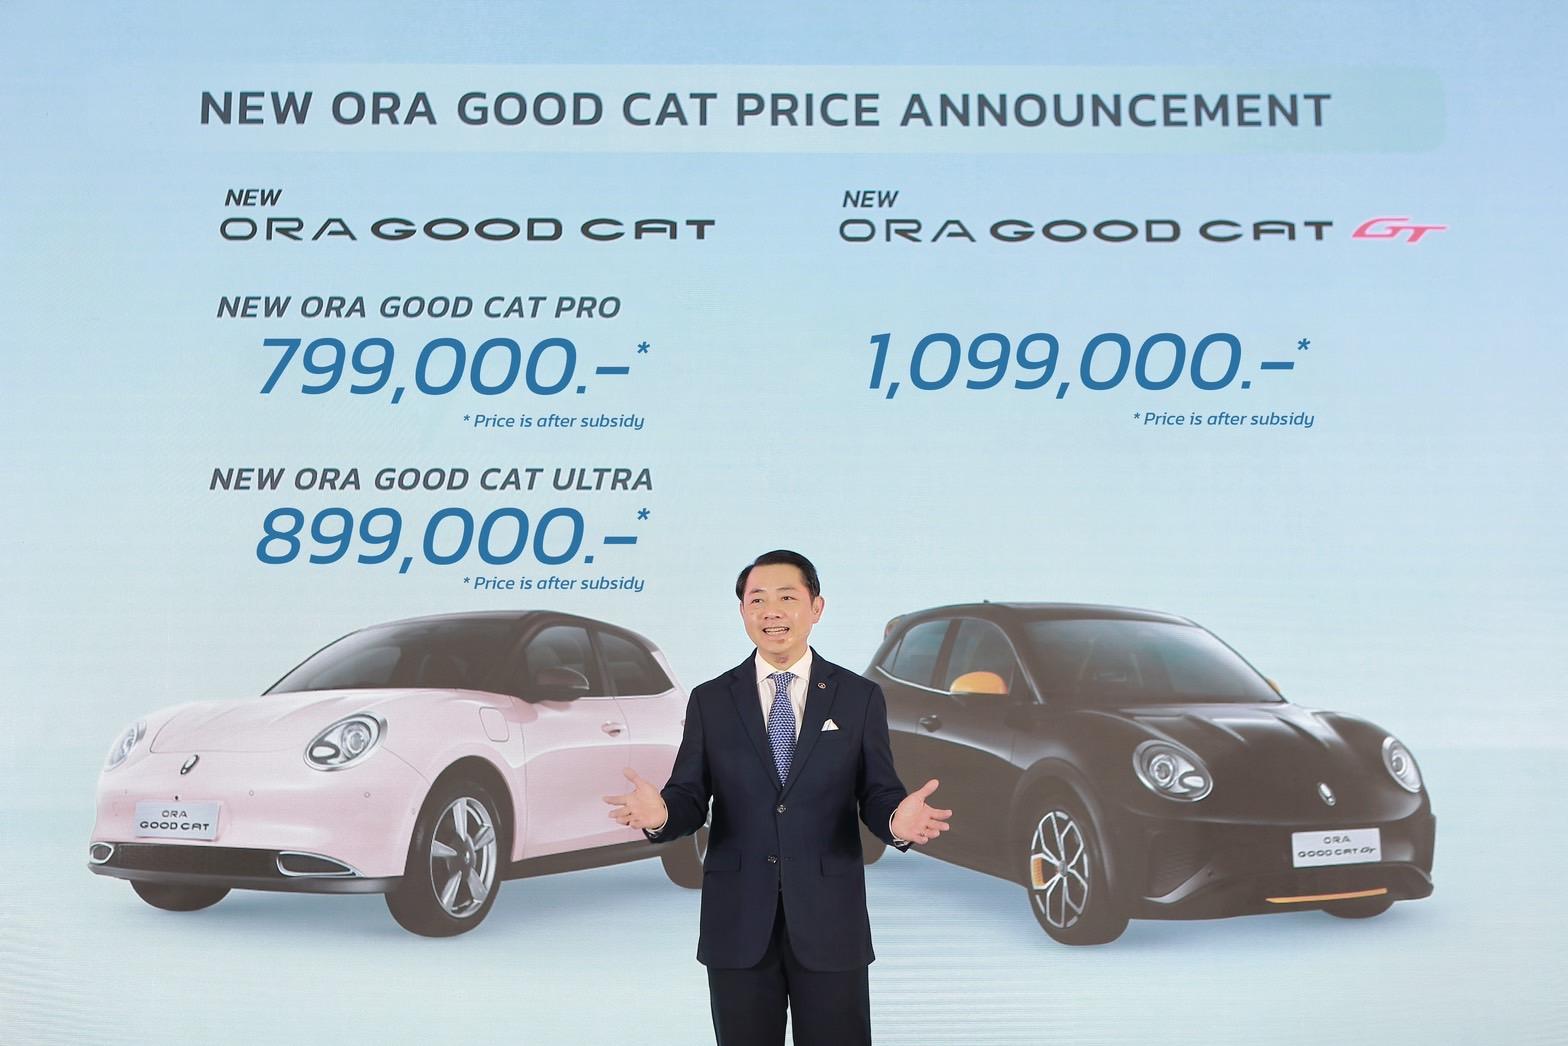 new ora good cat รุ่นผลิตในประเทศไทยลดราคาสูงสุด 1.87 แสนบาท